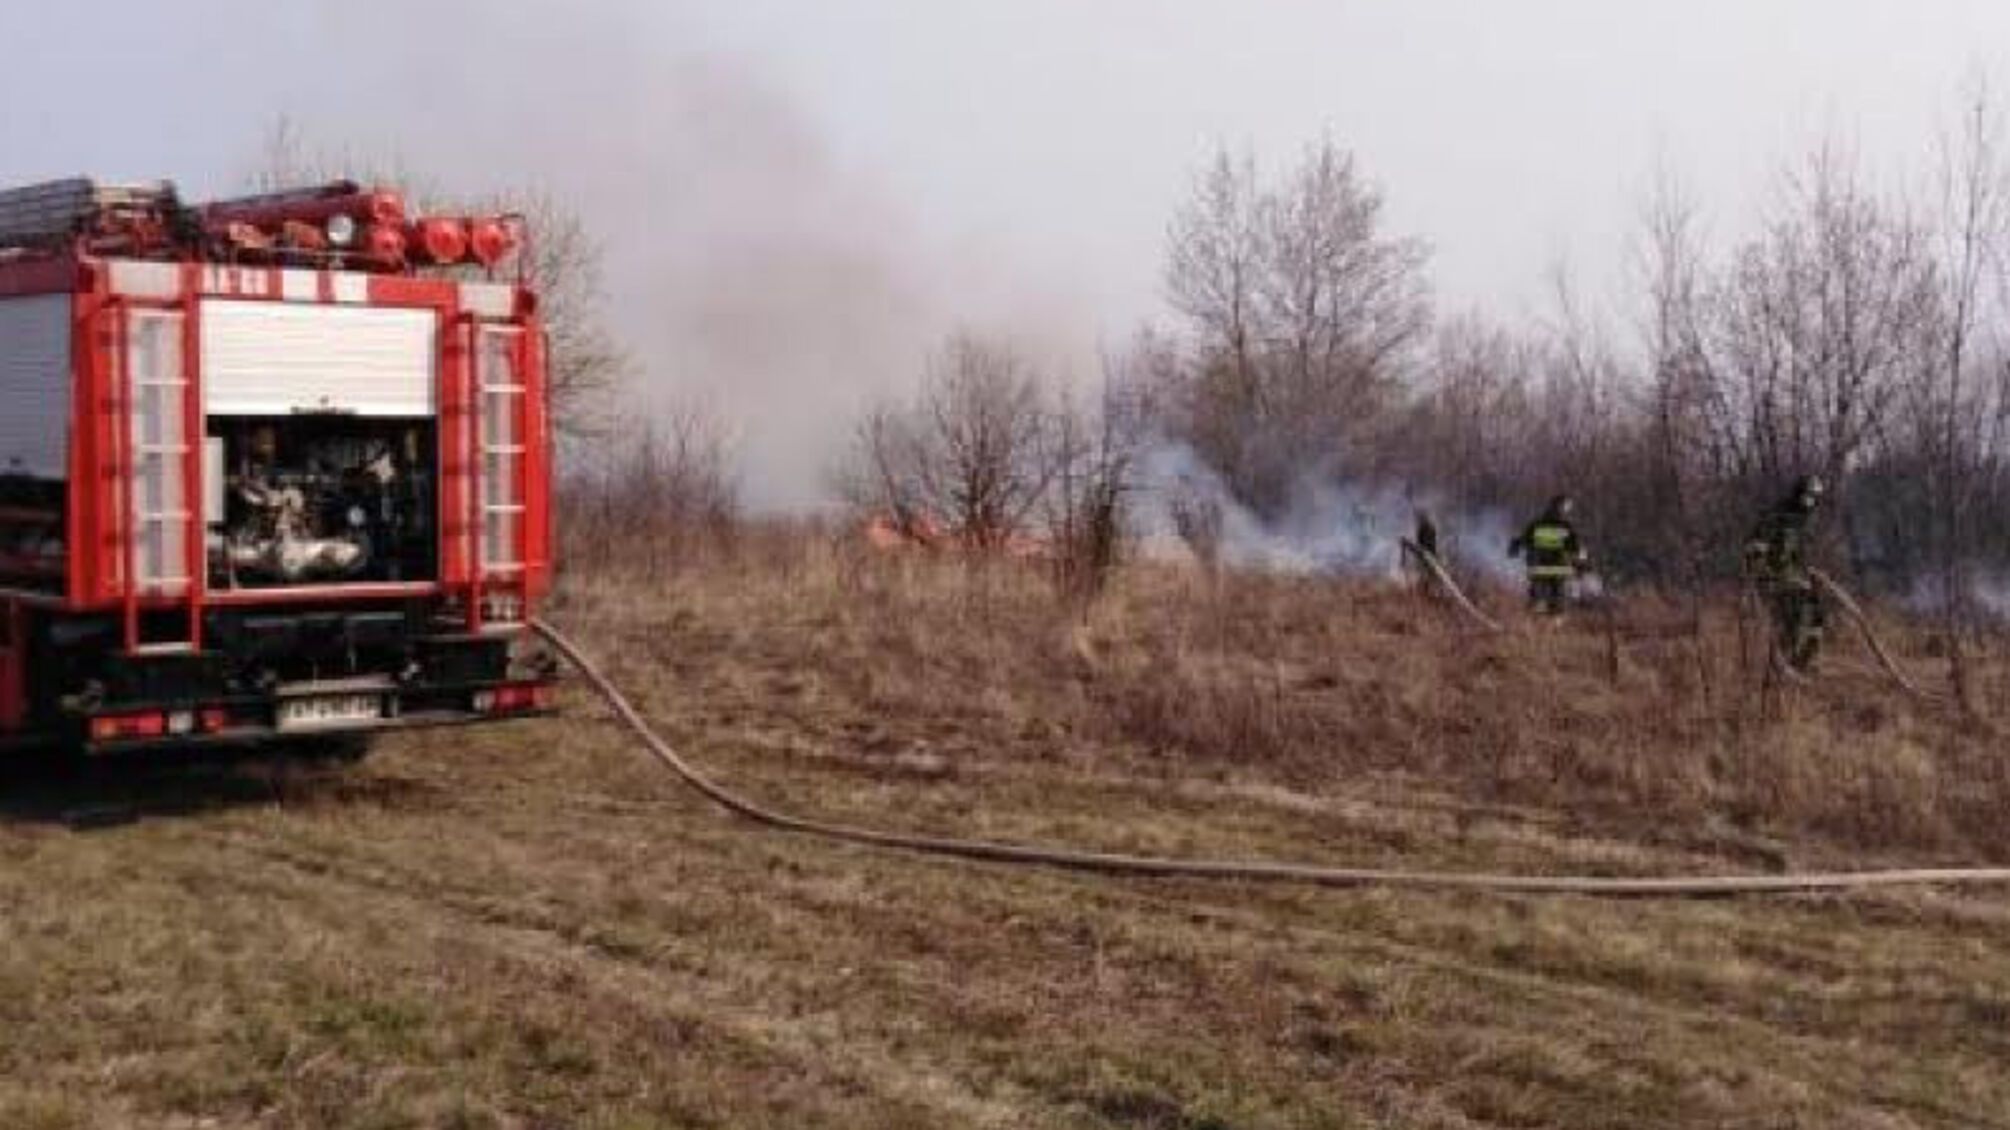 Івано-Франківська область: за минулу добу вогнеборці ліквідували 44 пожежі в природних екосистемах